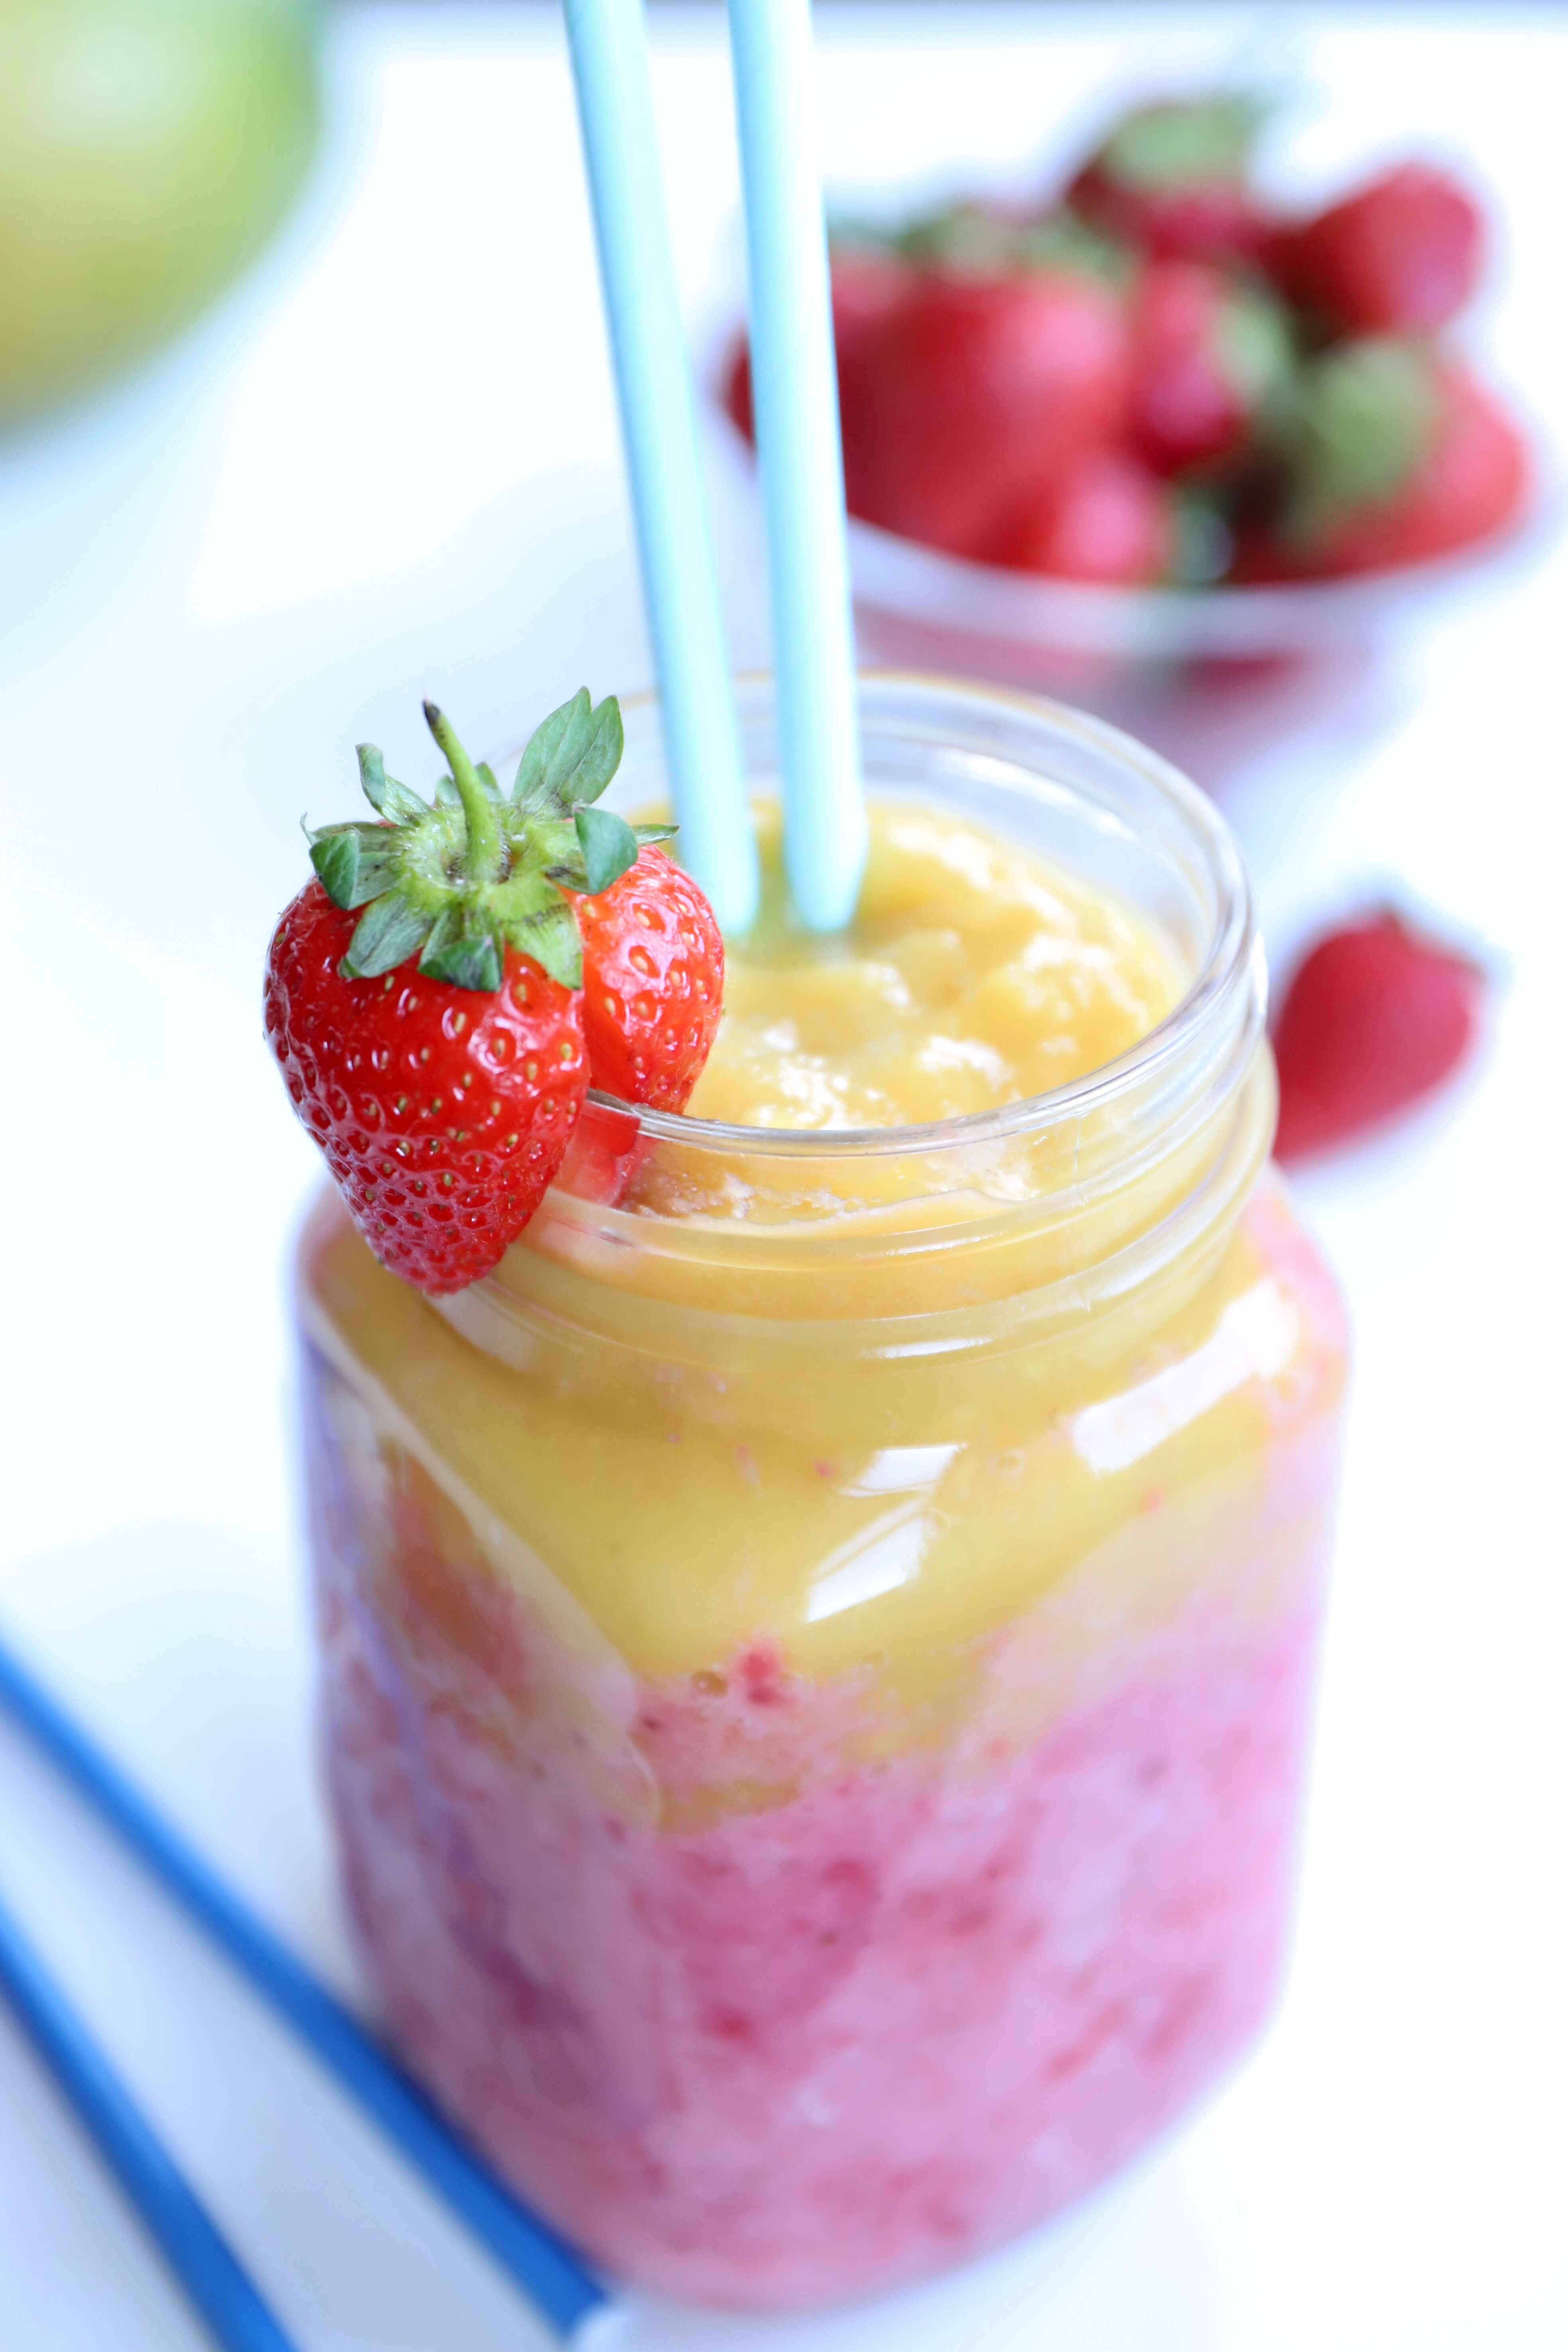 Strawberry Mango Sunrise Smoothie - Spoonful of Kindness